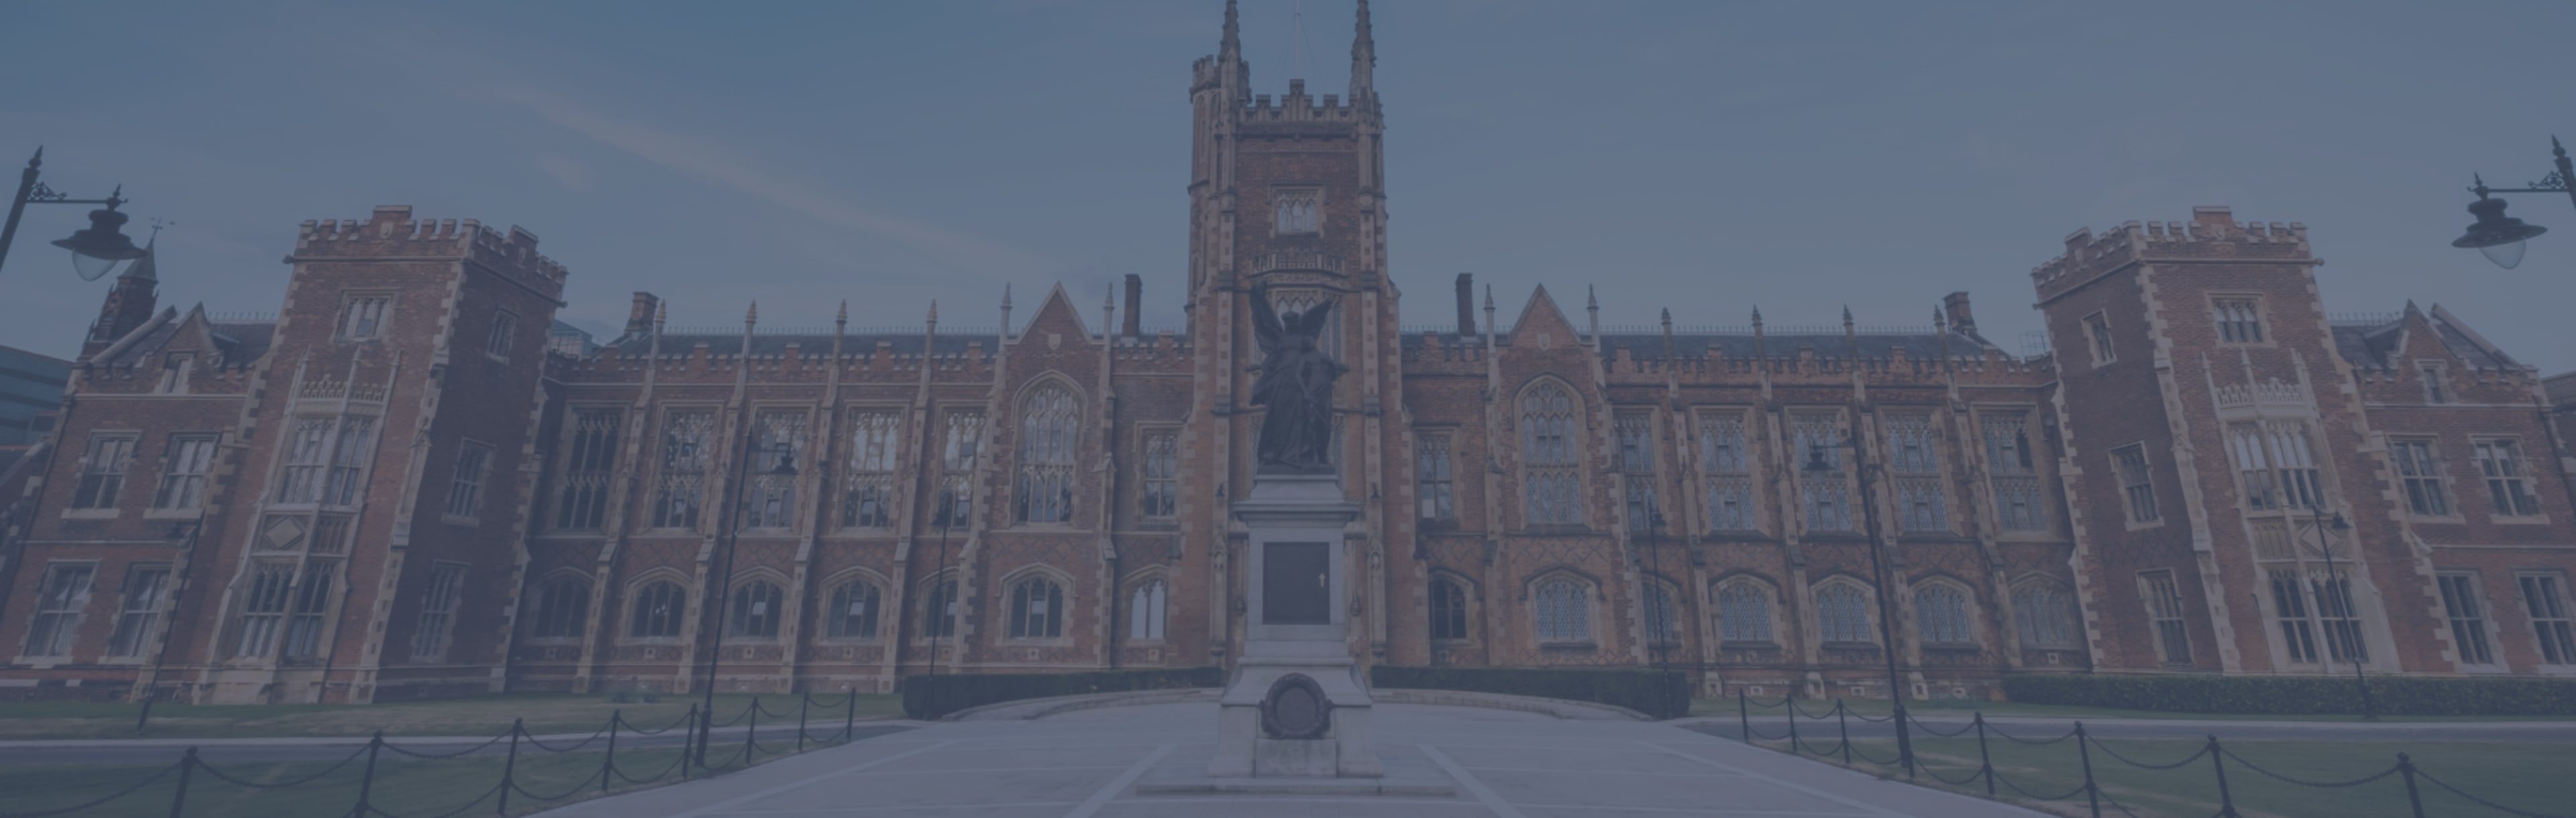 Queen's University Belfast PgDip i våld, terrorism och säkerhet